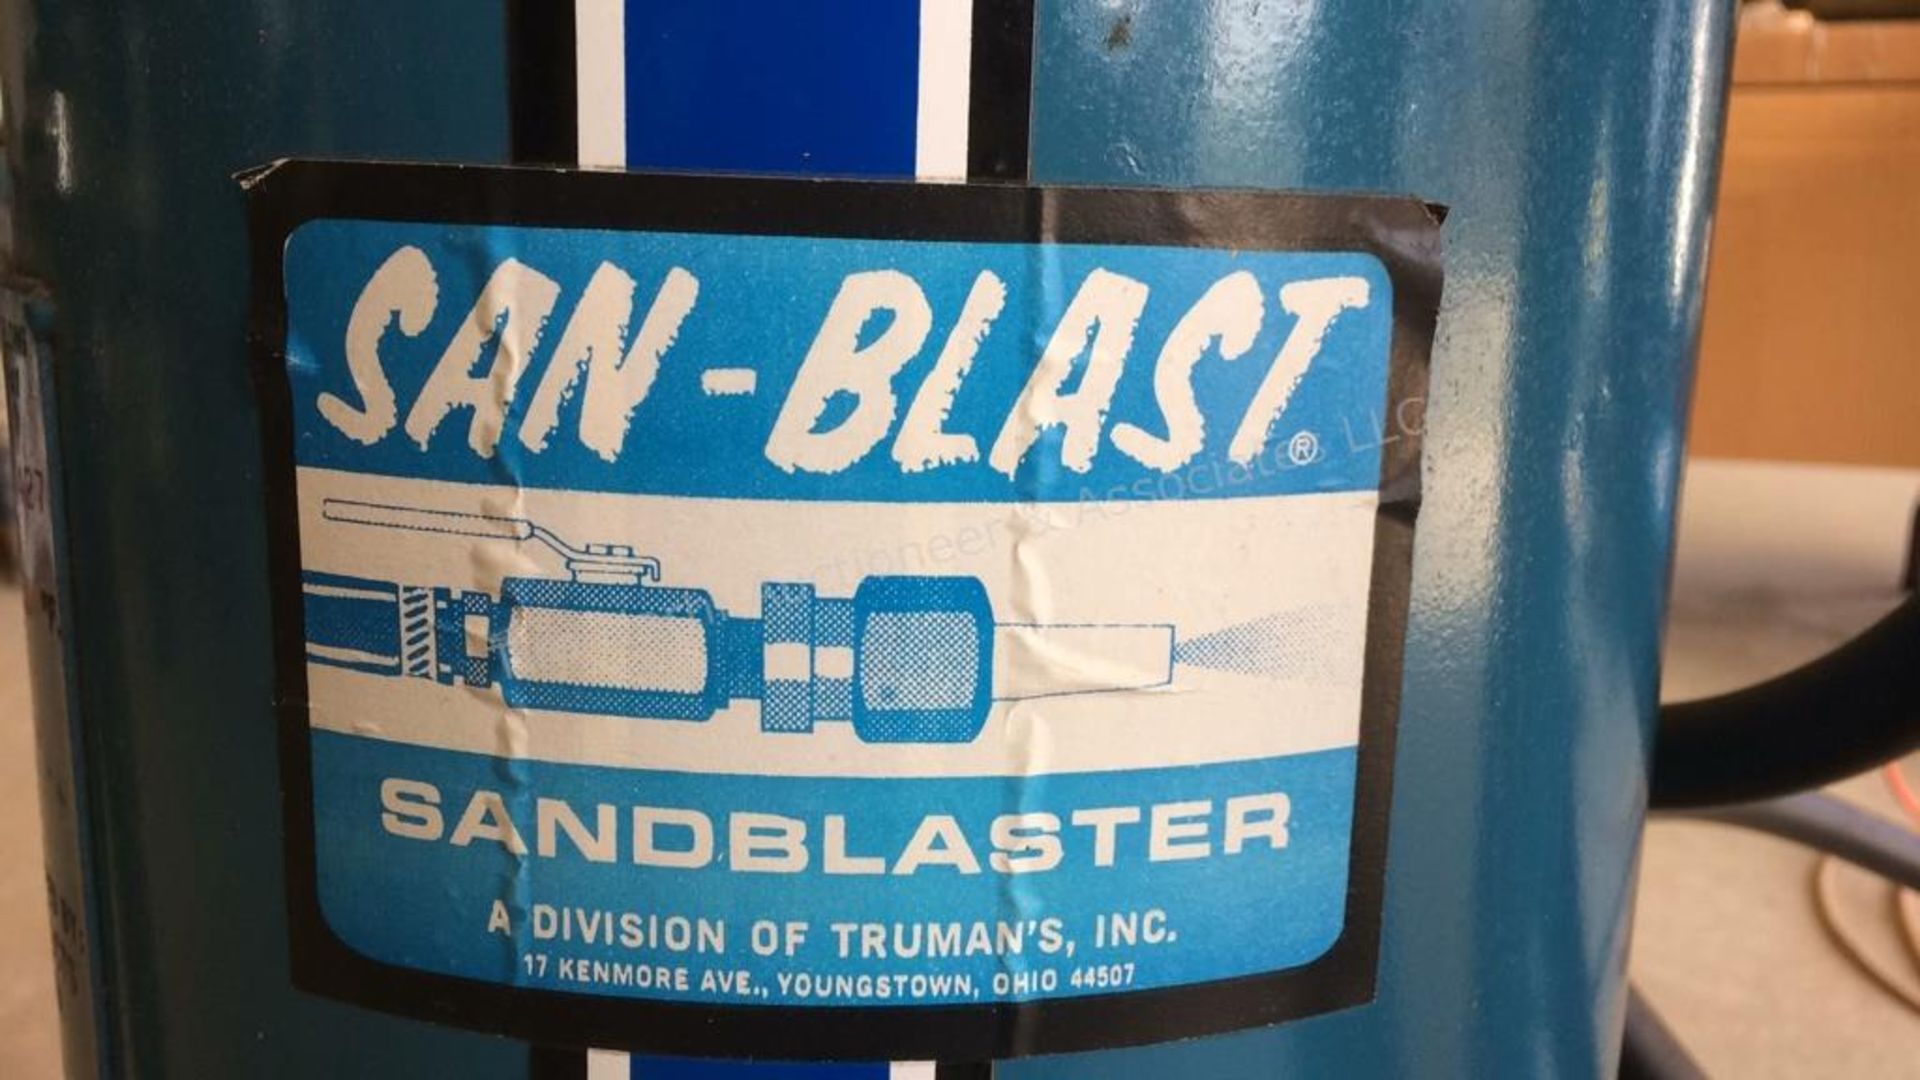 A: San-blast sandblaster - Image 3 of 4